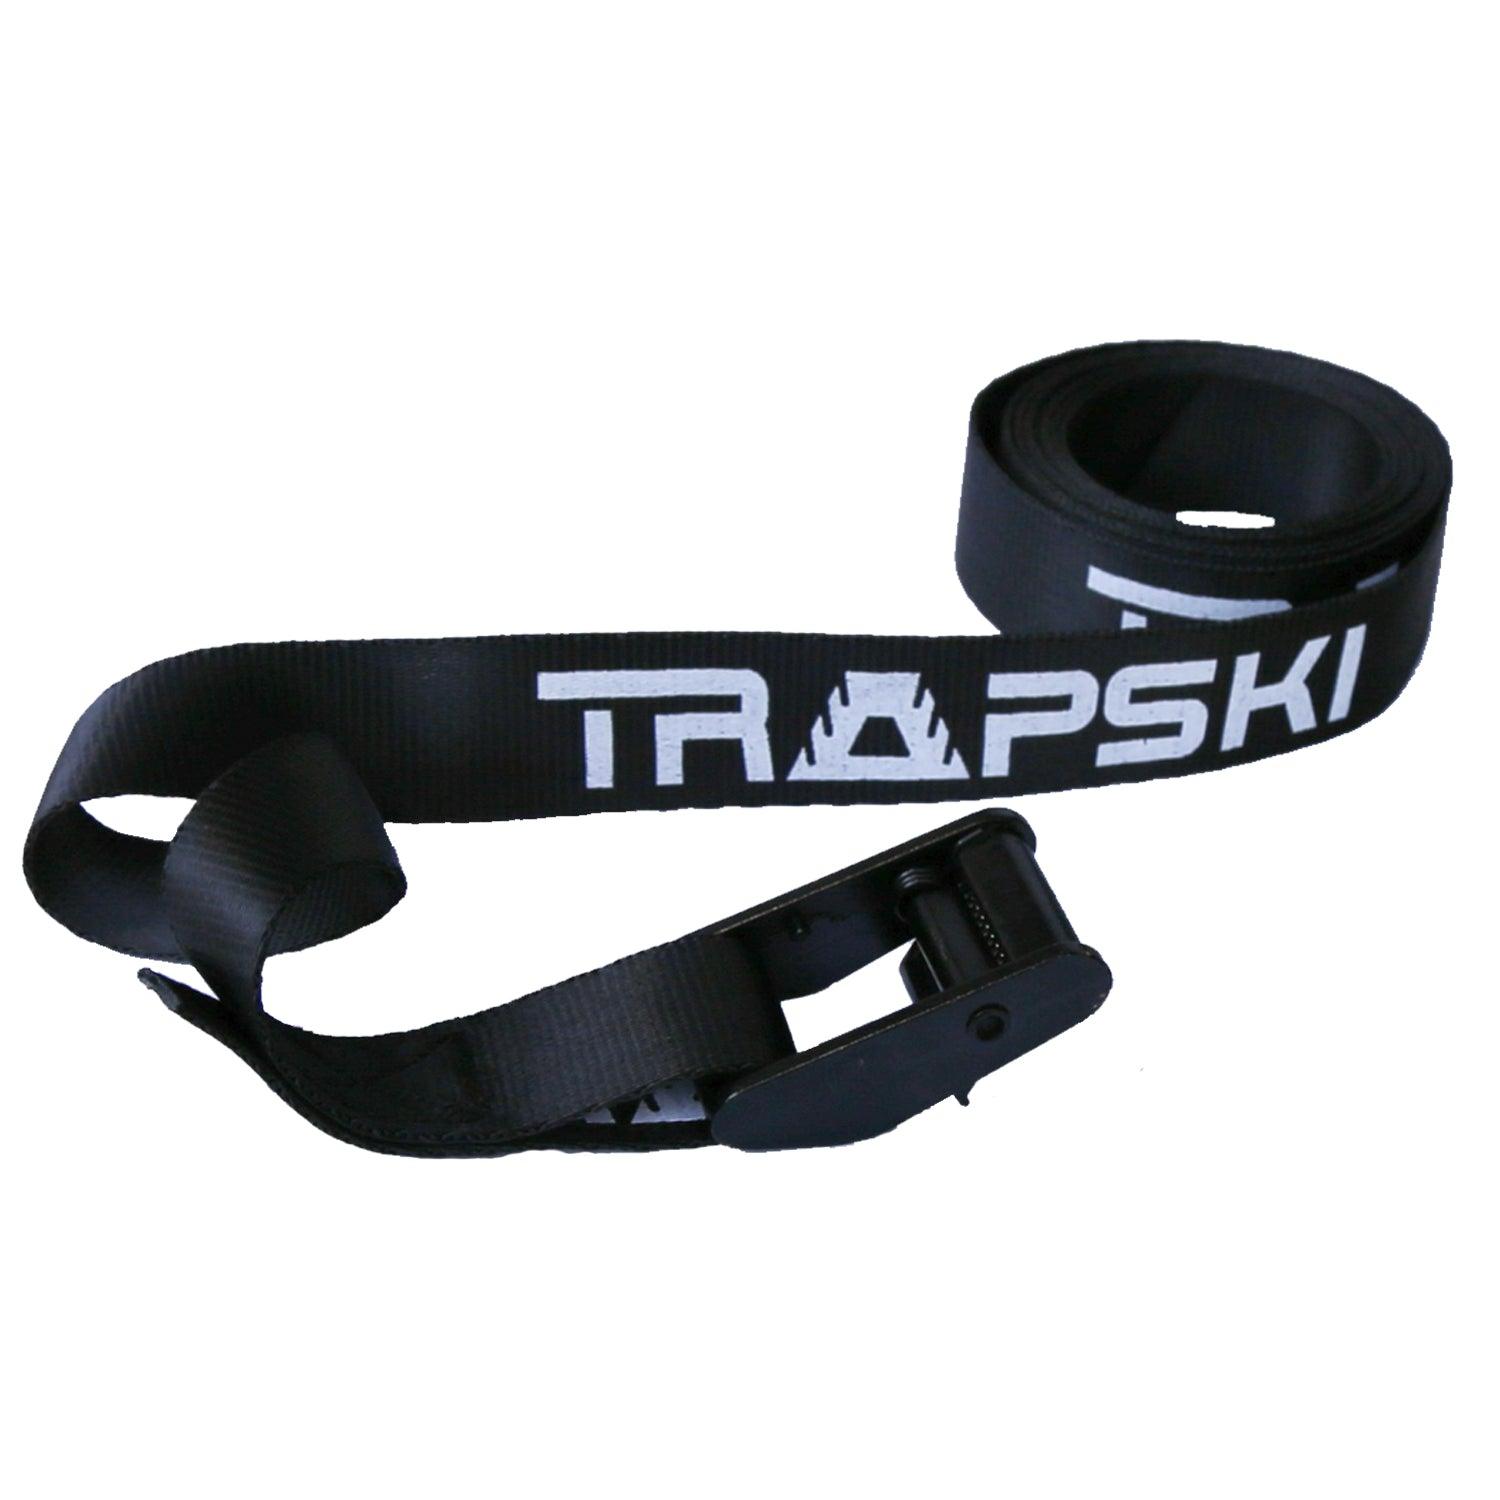 TRAPSKI Premium Strap, Cam Buckle Tie Down Strap